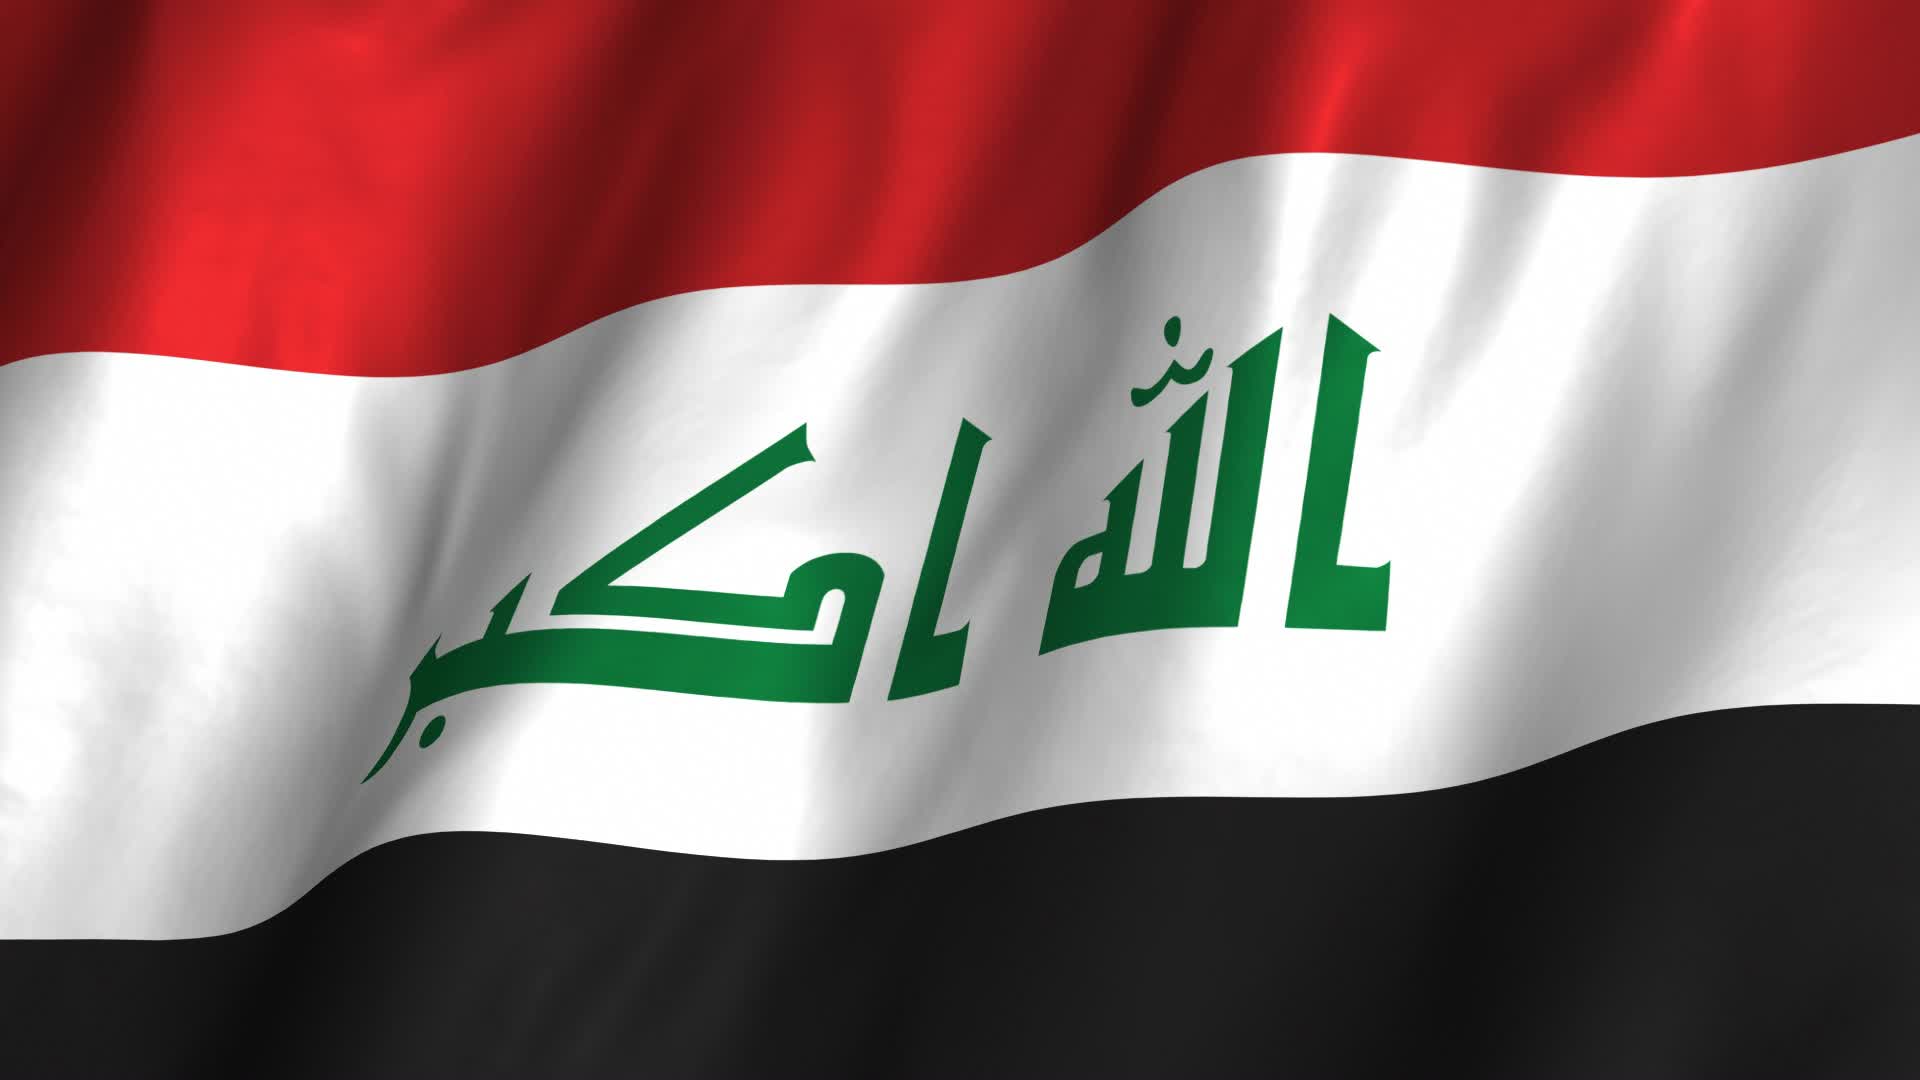 صنع السلام وإرساء ثقافة اللاعنف في العراق بعد هزيمة الإرهاب